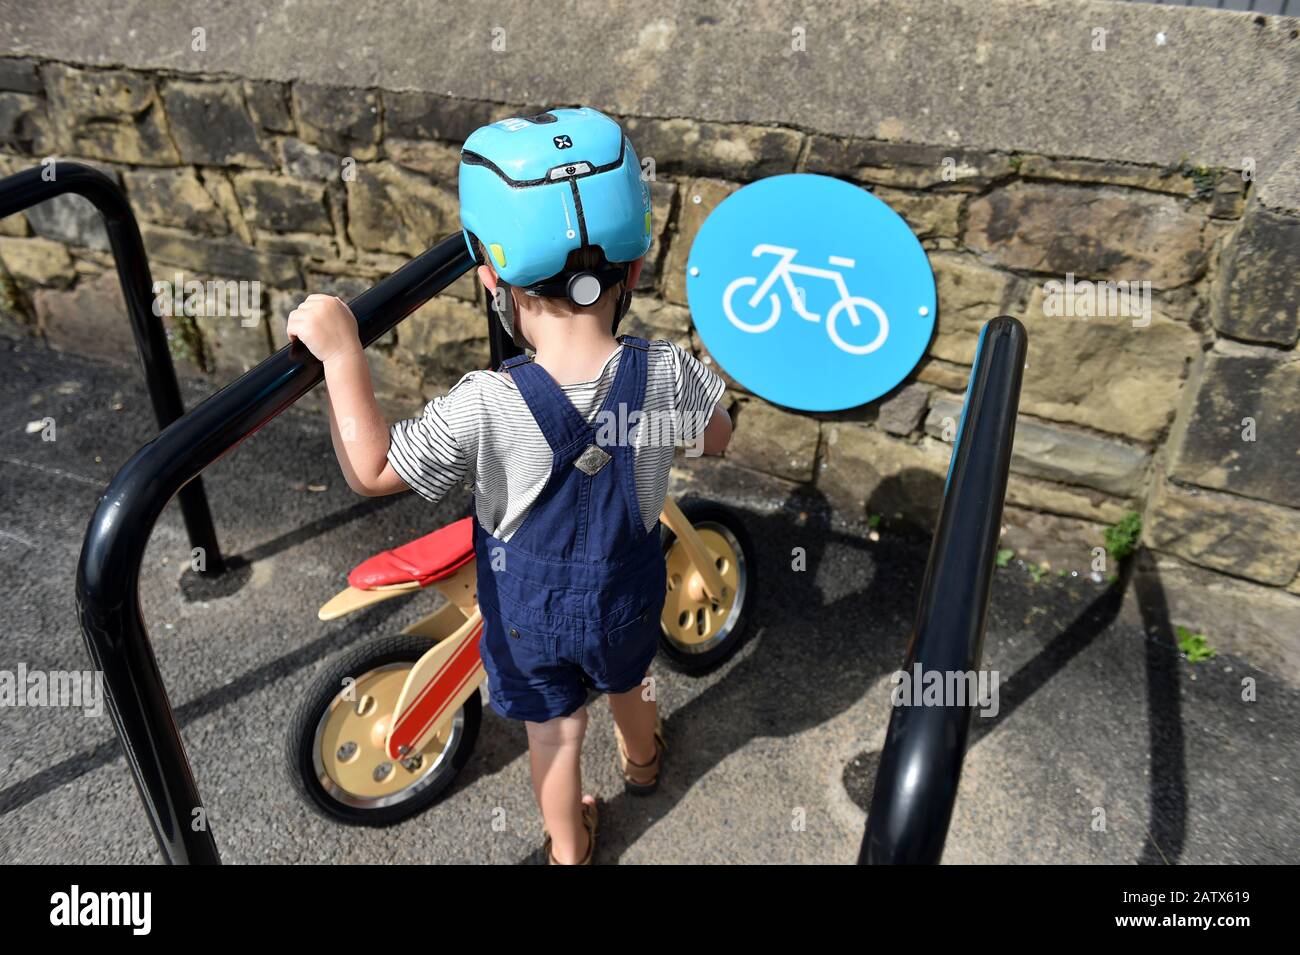 Vélo d'équilibre stationné dans une baie de stationnement à vélo Royaume-Uni Banque D'Images